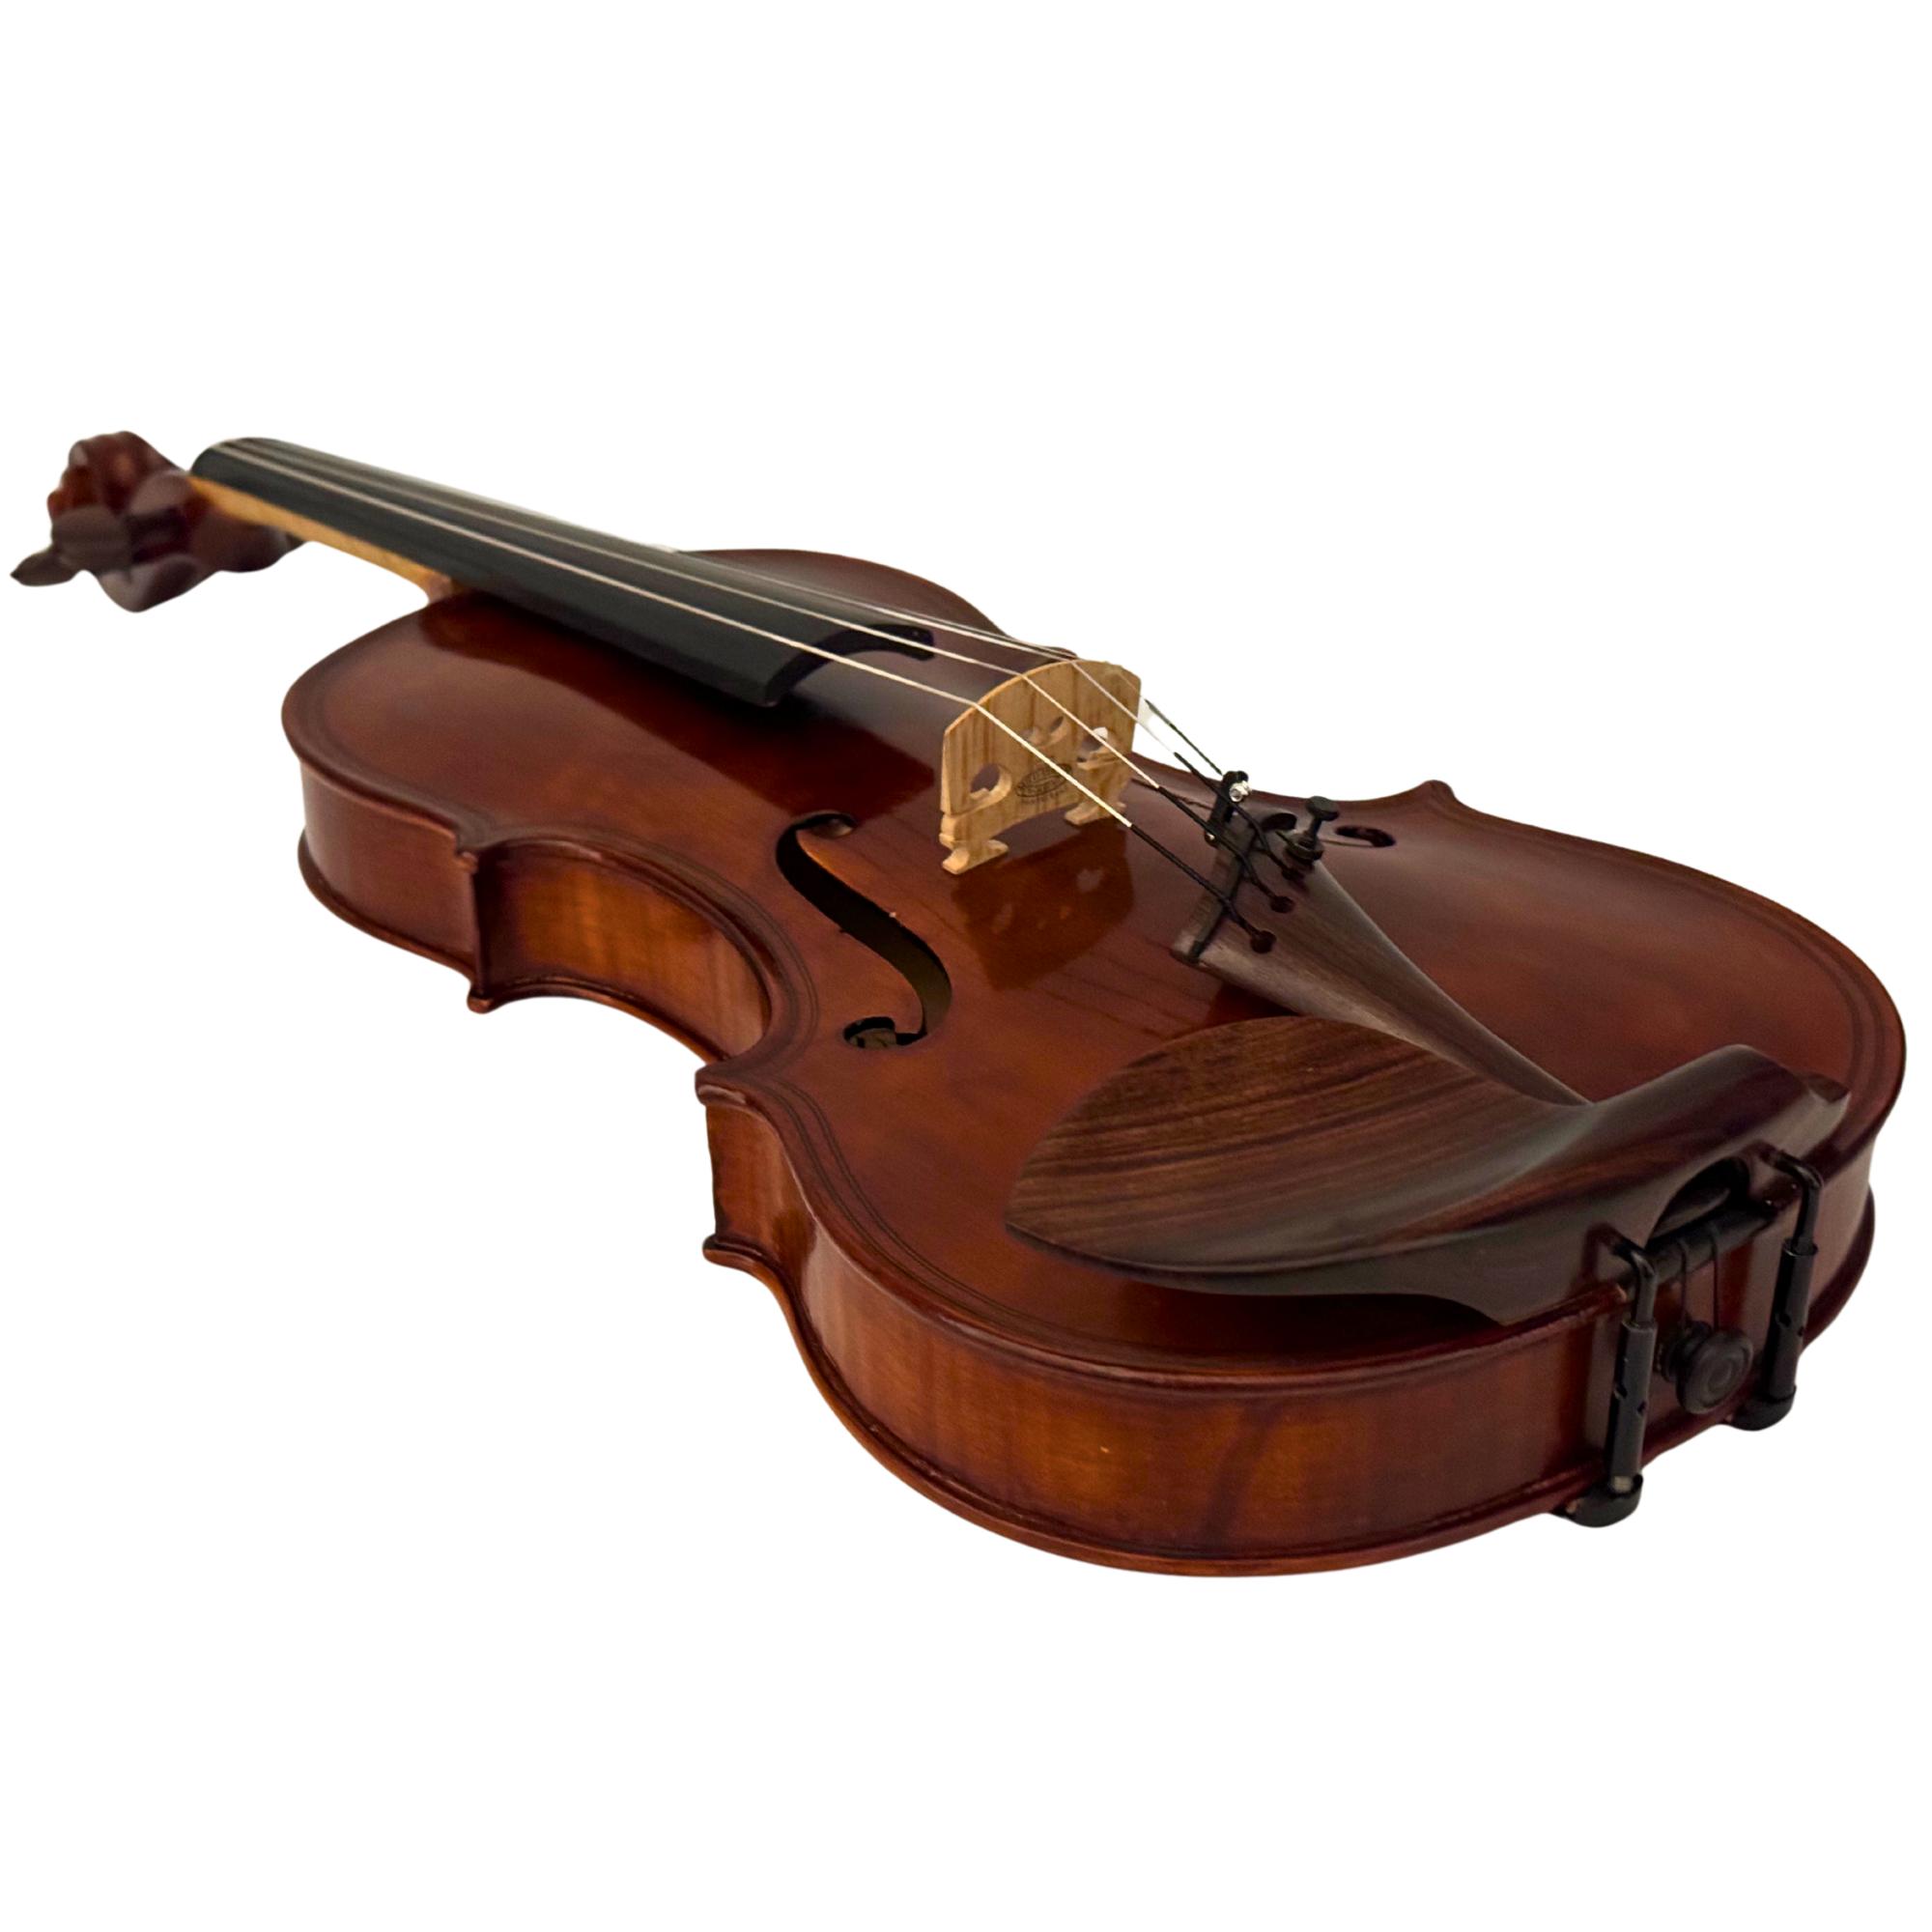 ZS Strings Maggini Model Violin 009 in action